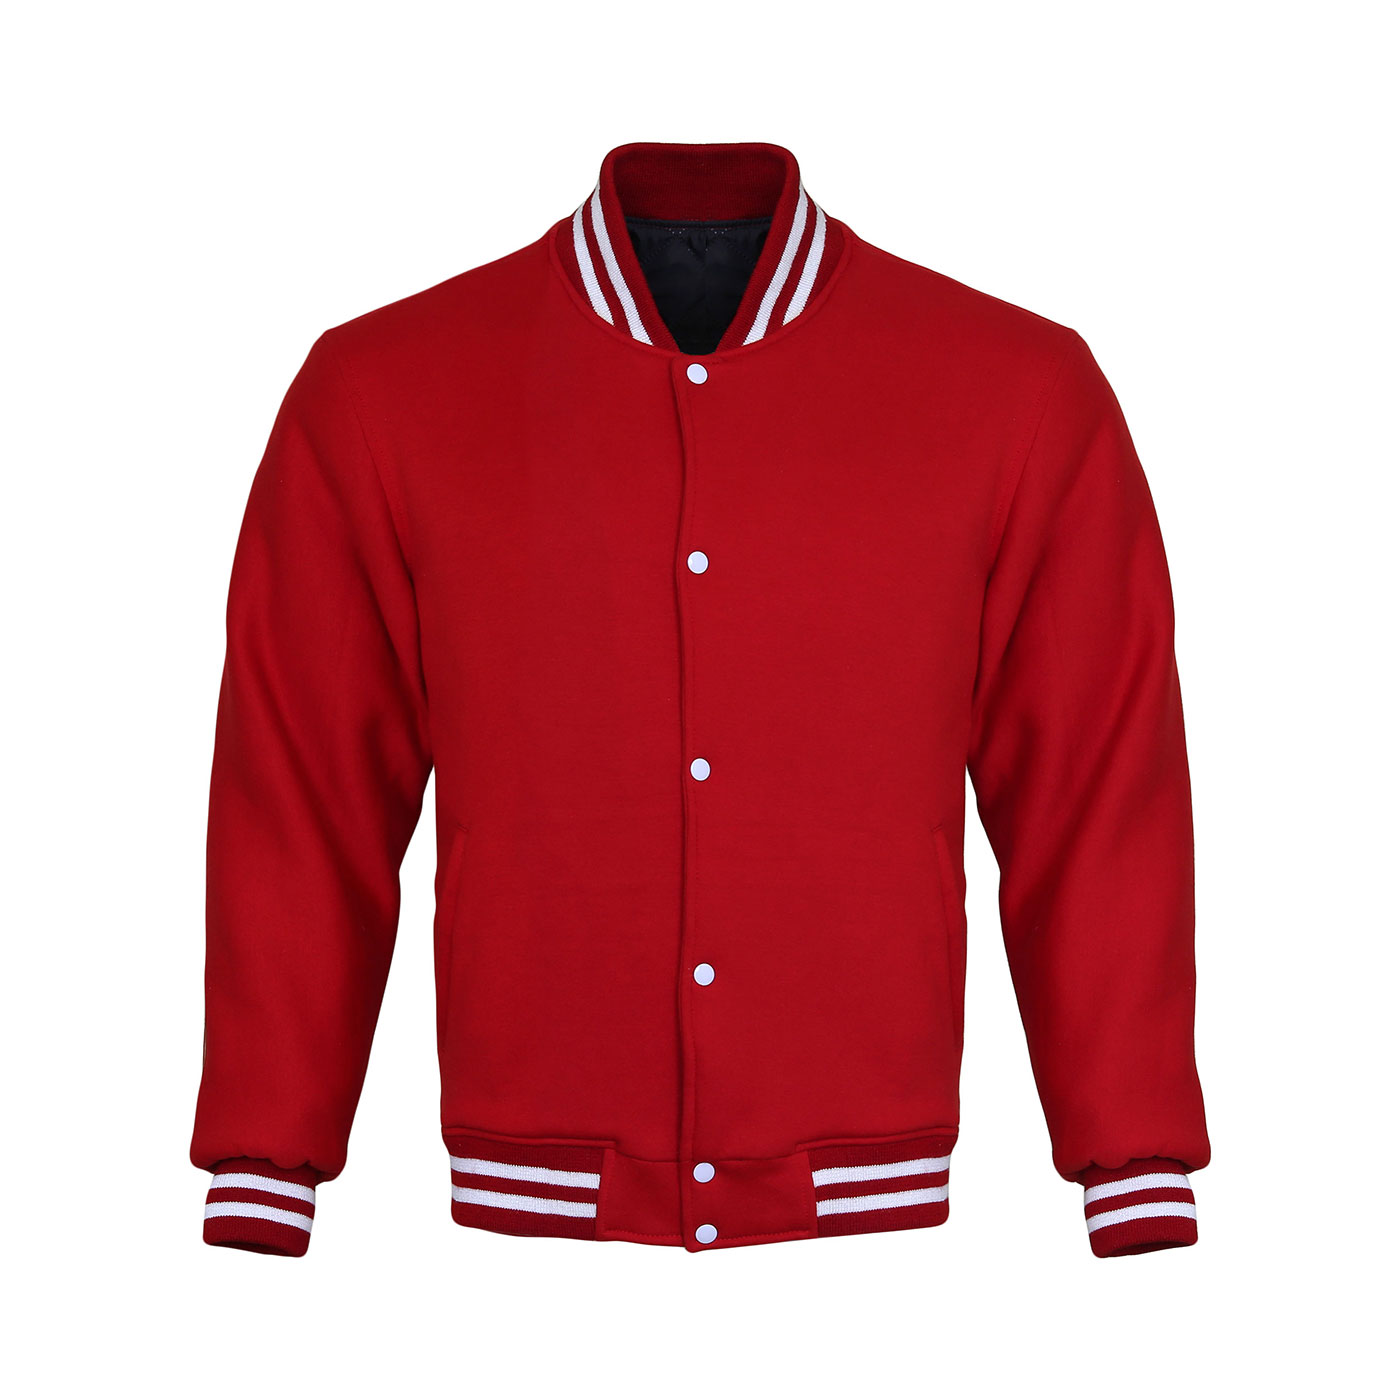 Red Cotton Fleece Varsity Jacket